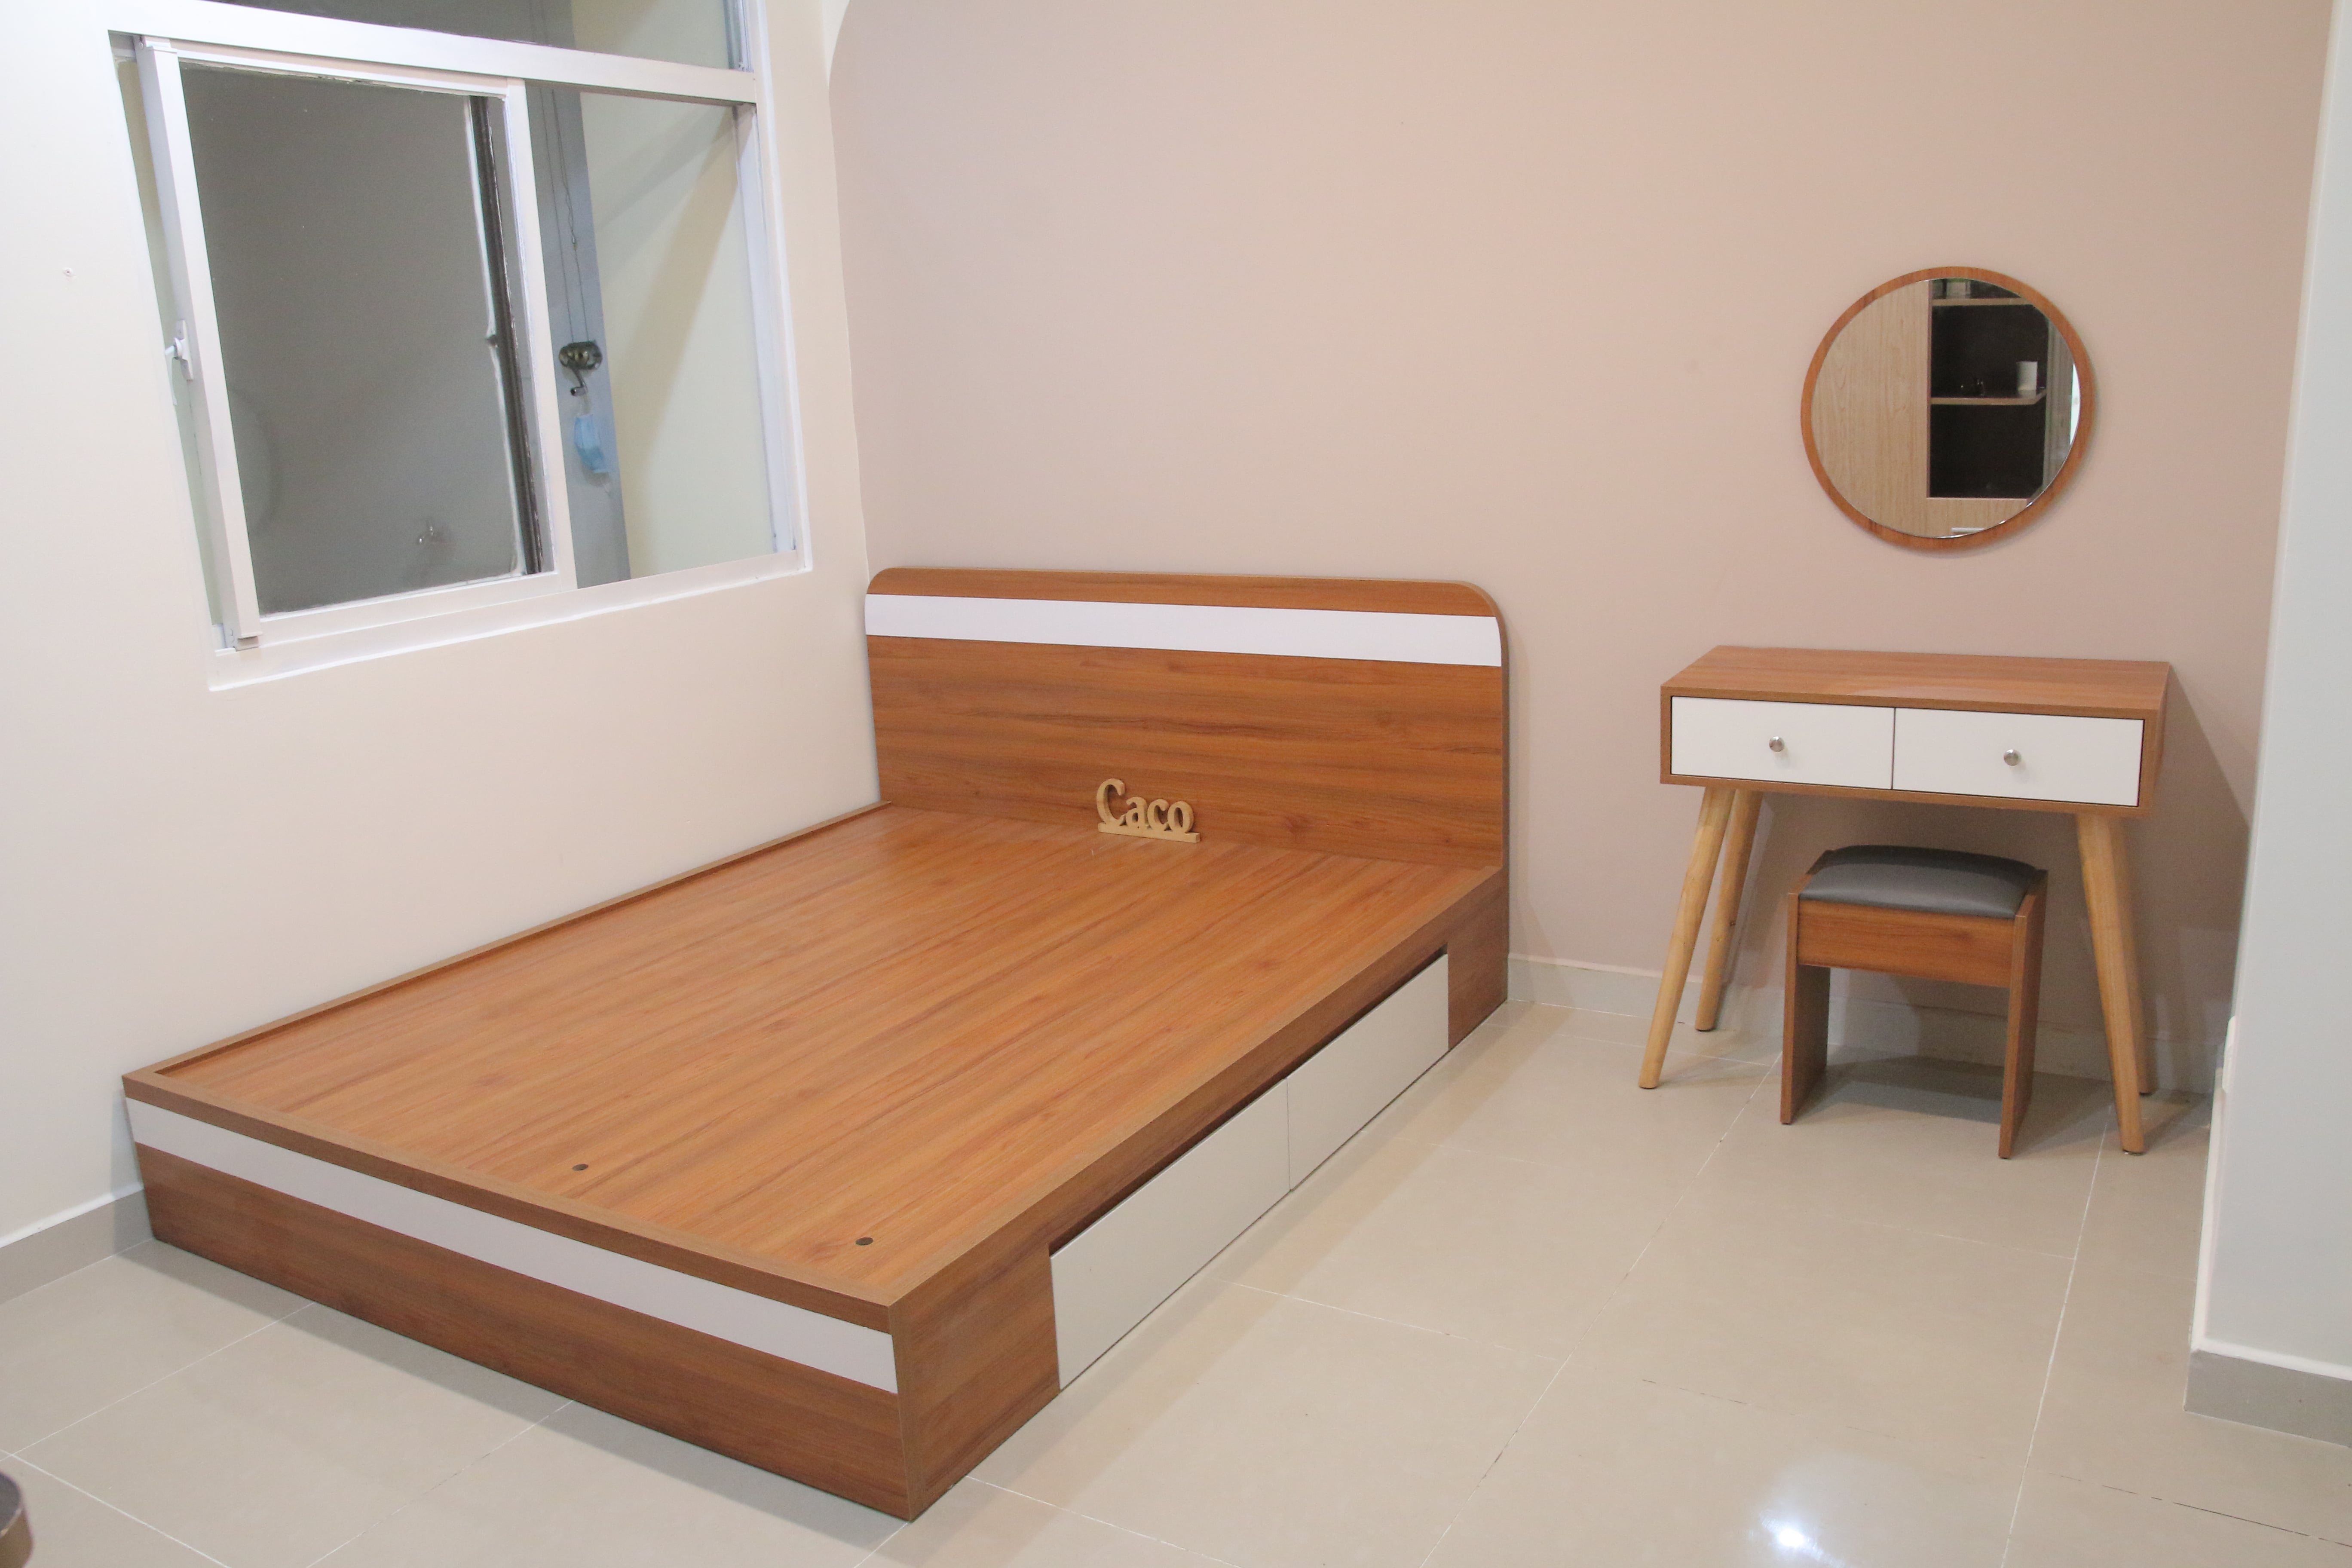 Mẫu giường ngủ có thiết kế đơn giản nhưng tinh tế đem đến màu sắc mới lạ, trẻ trung và hiện đại